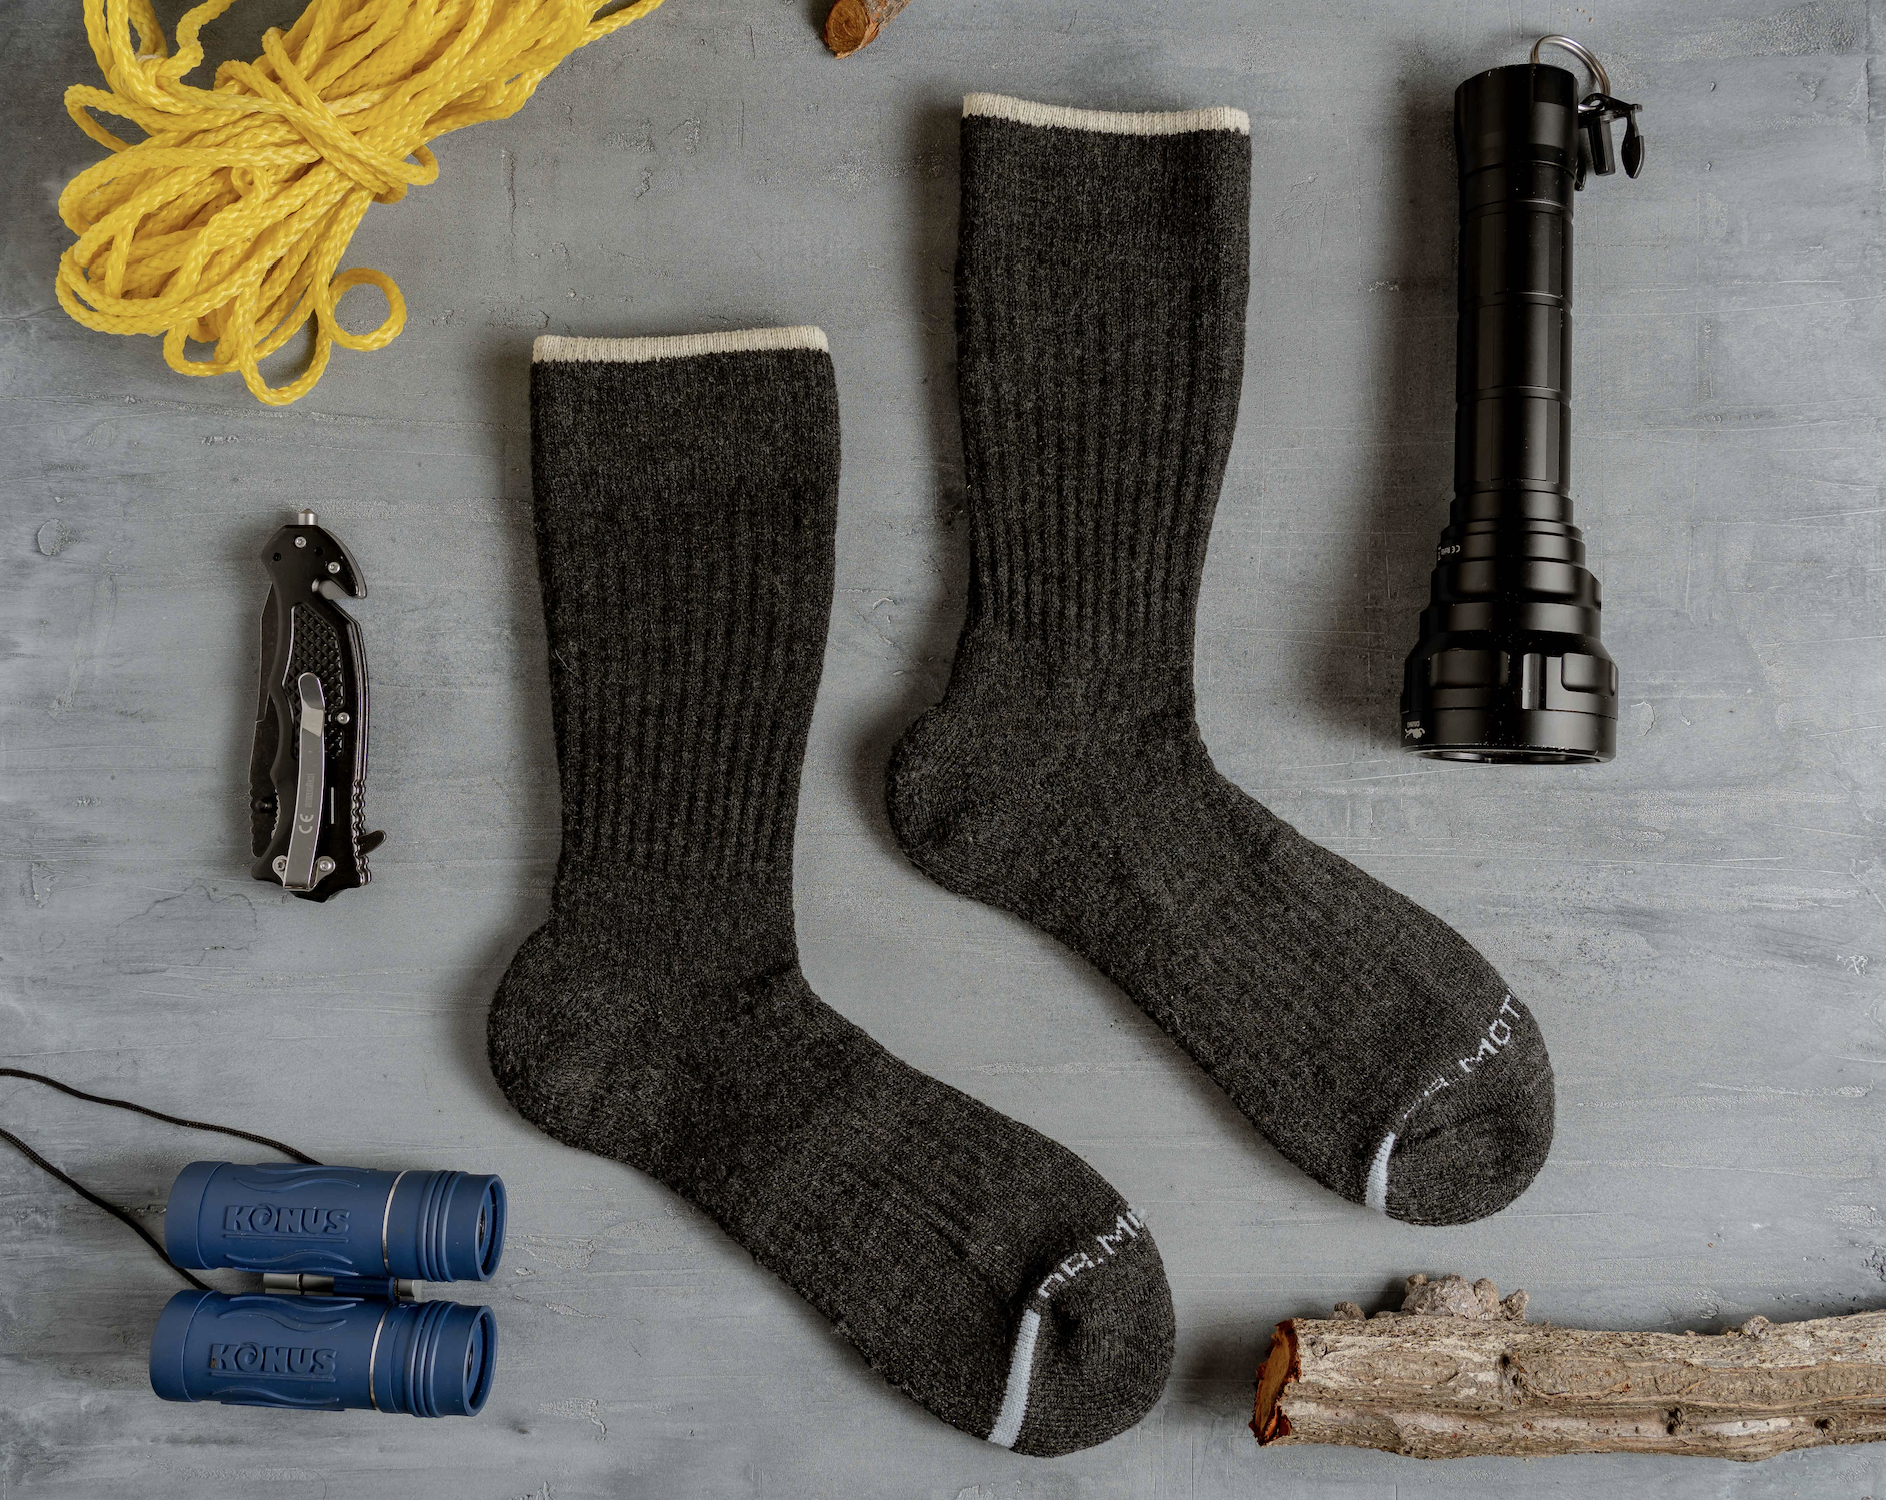 6 Benefits of Compression Socks for Men